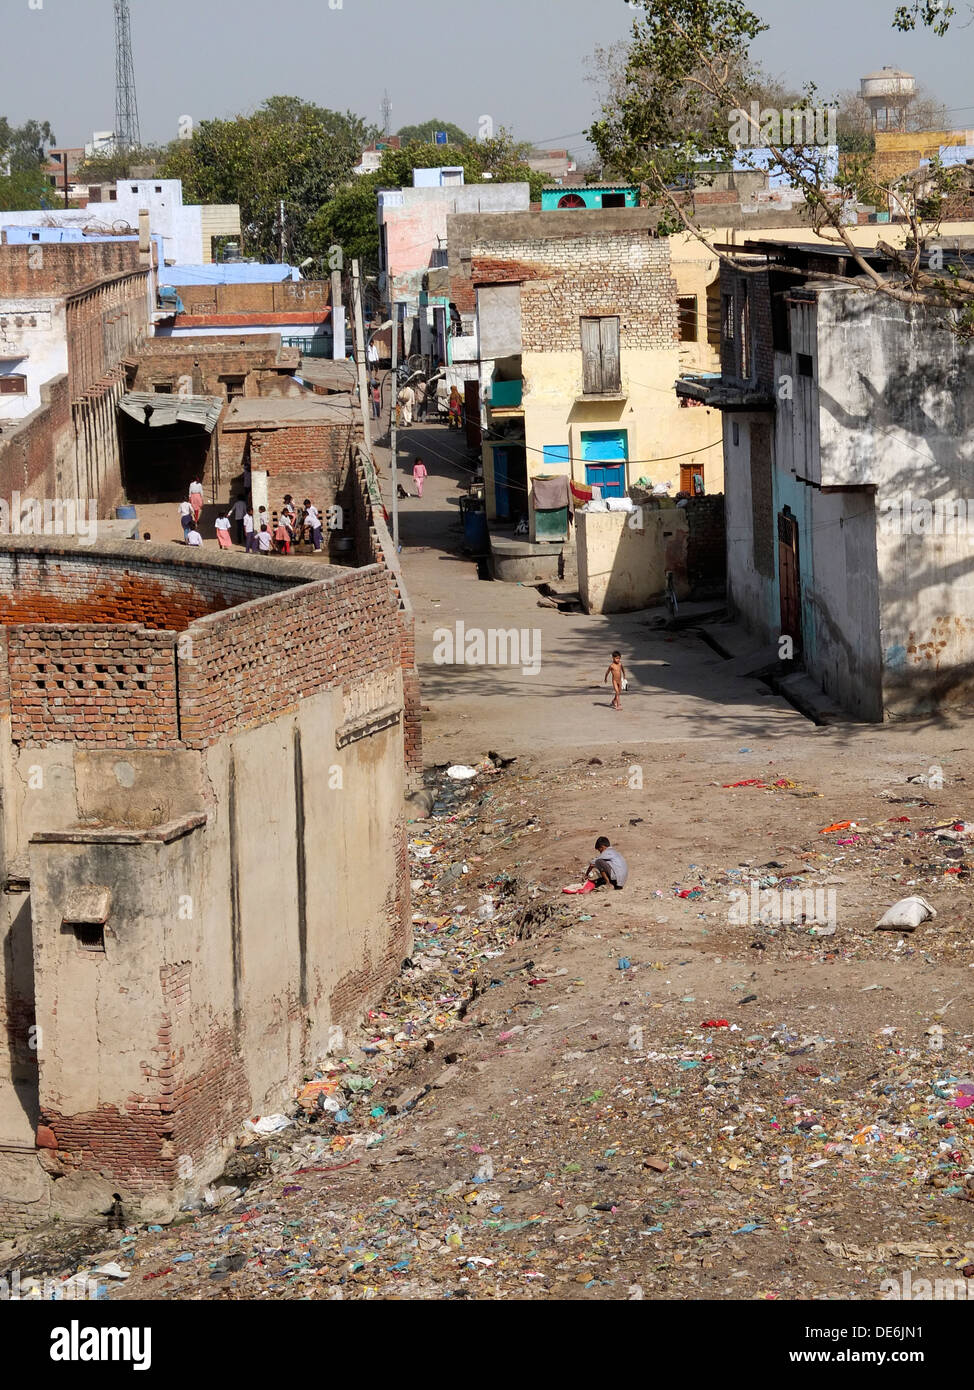 La India, Uttar Pradesh, Agra, típica vivienda y la basura de la calle Foto de stock